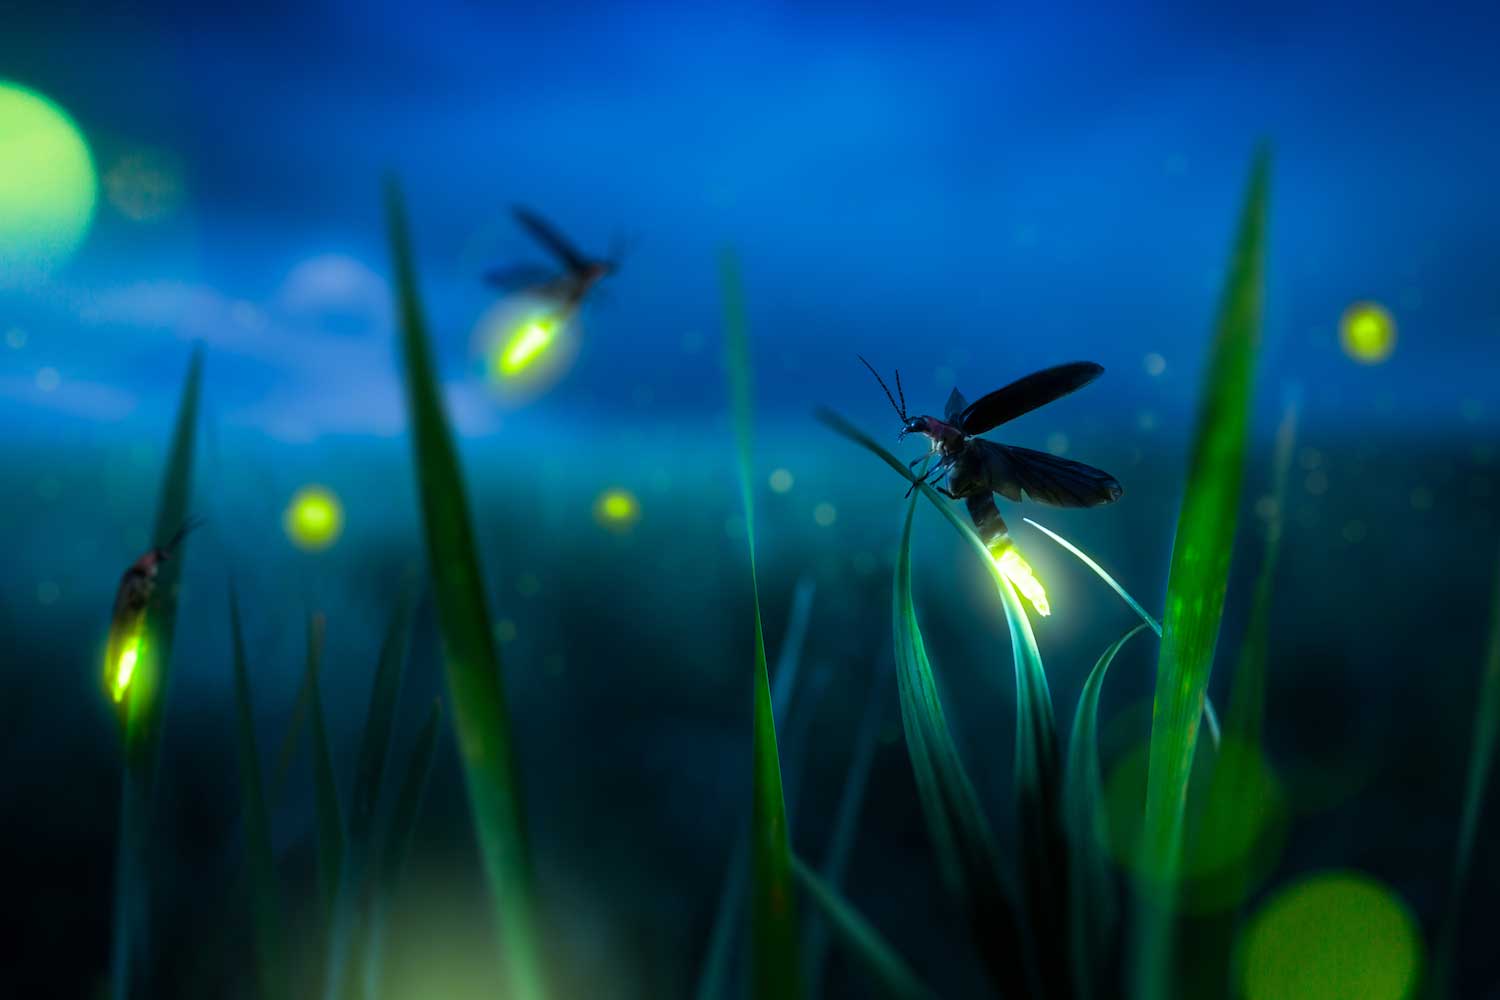 Fireflies aglow above the grass.